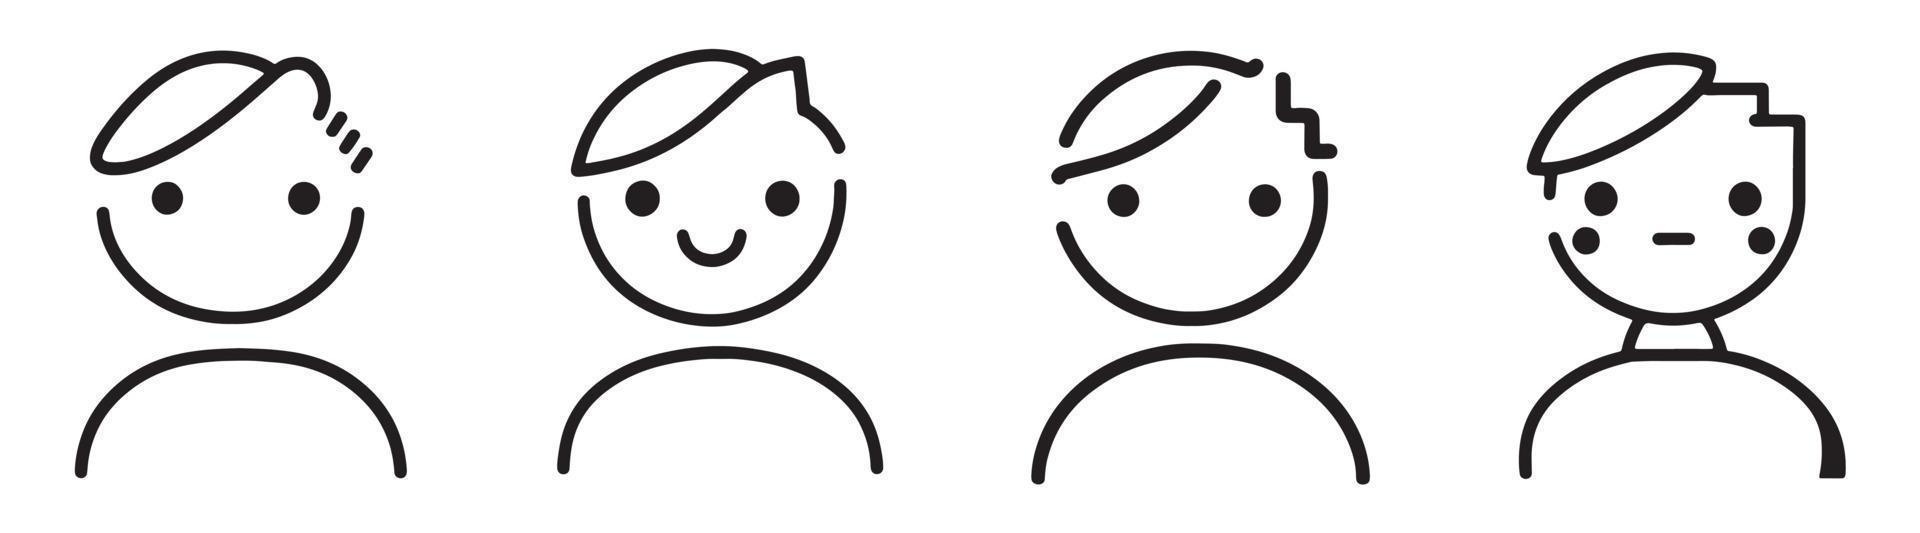 schets van een weinig jongen - vreugde, geluk en verschillend gezicht uitdrukkingen vector